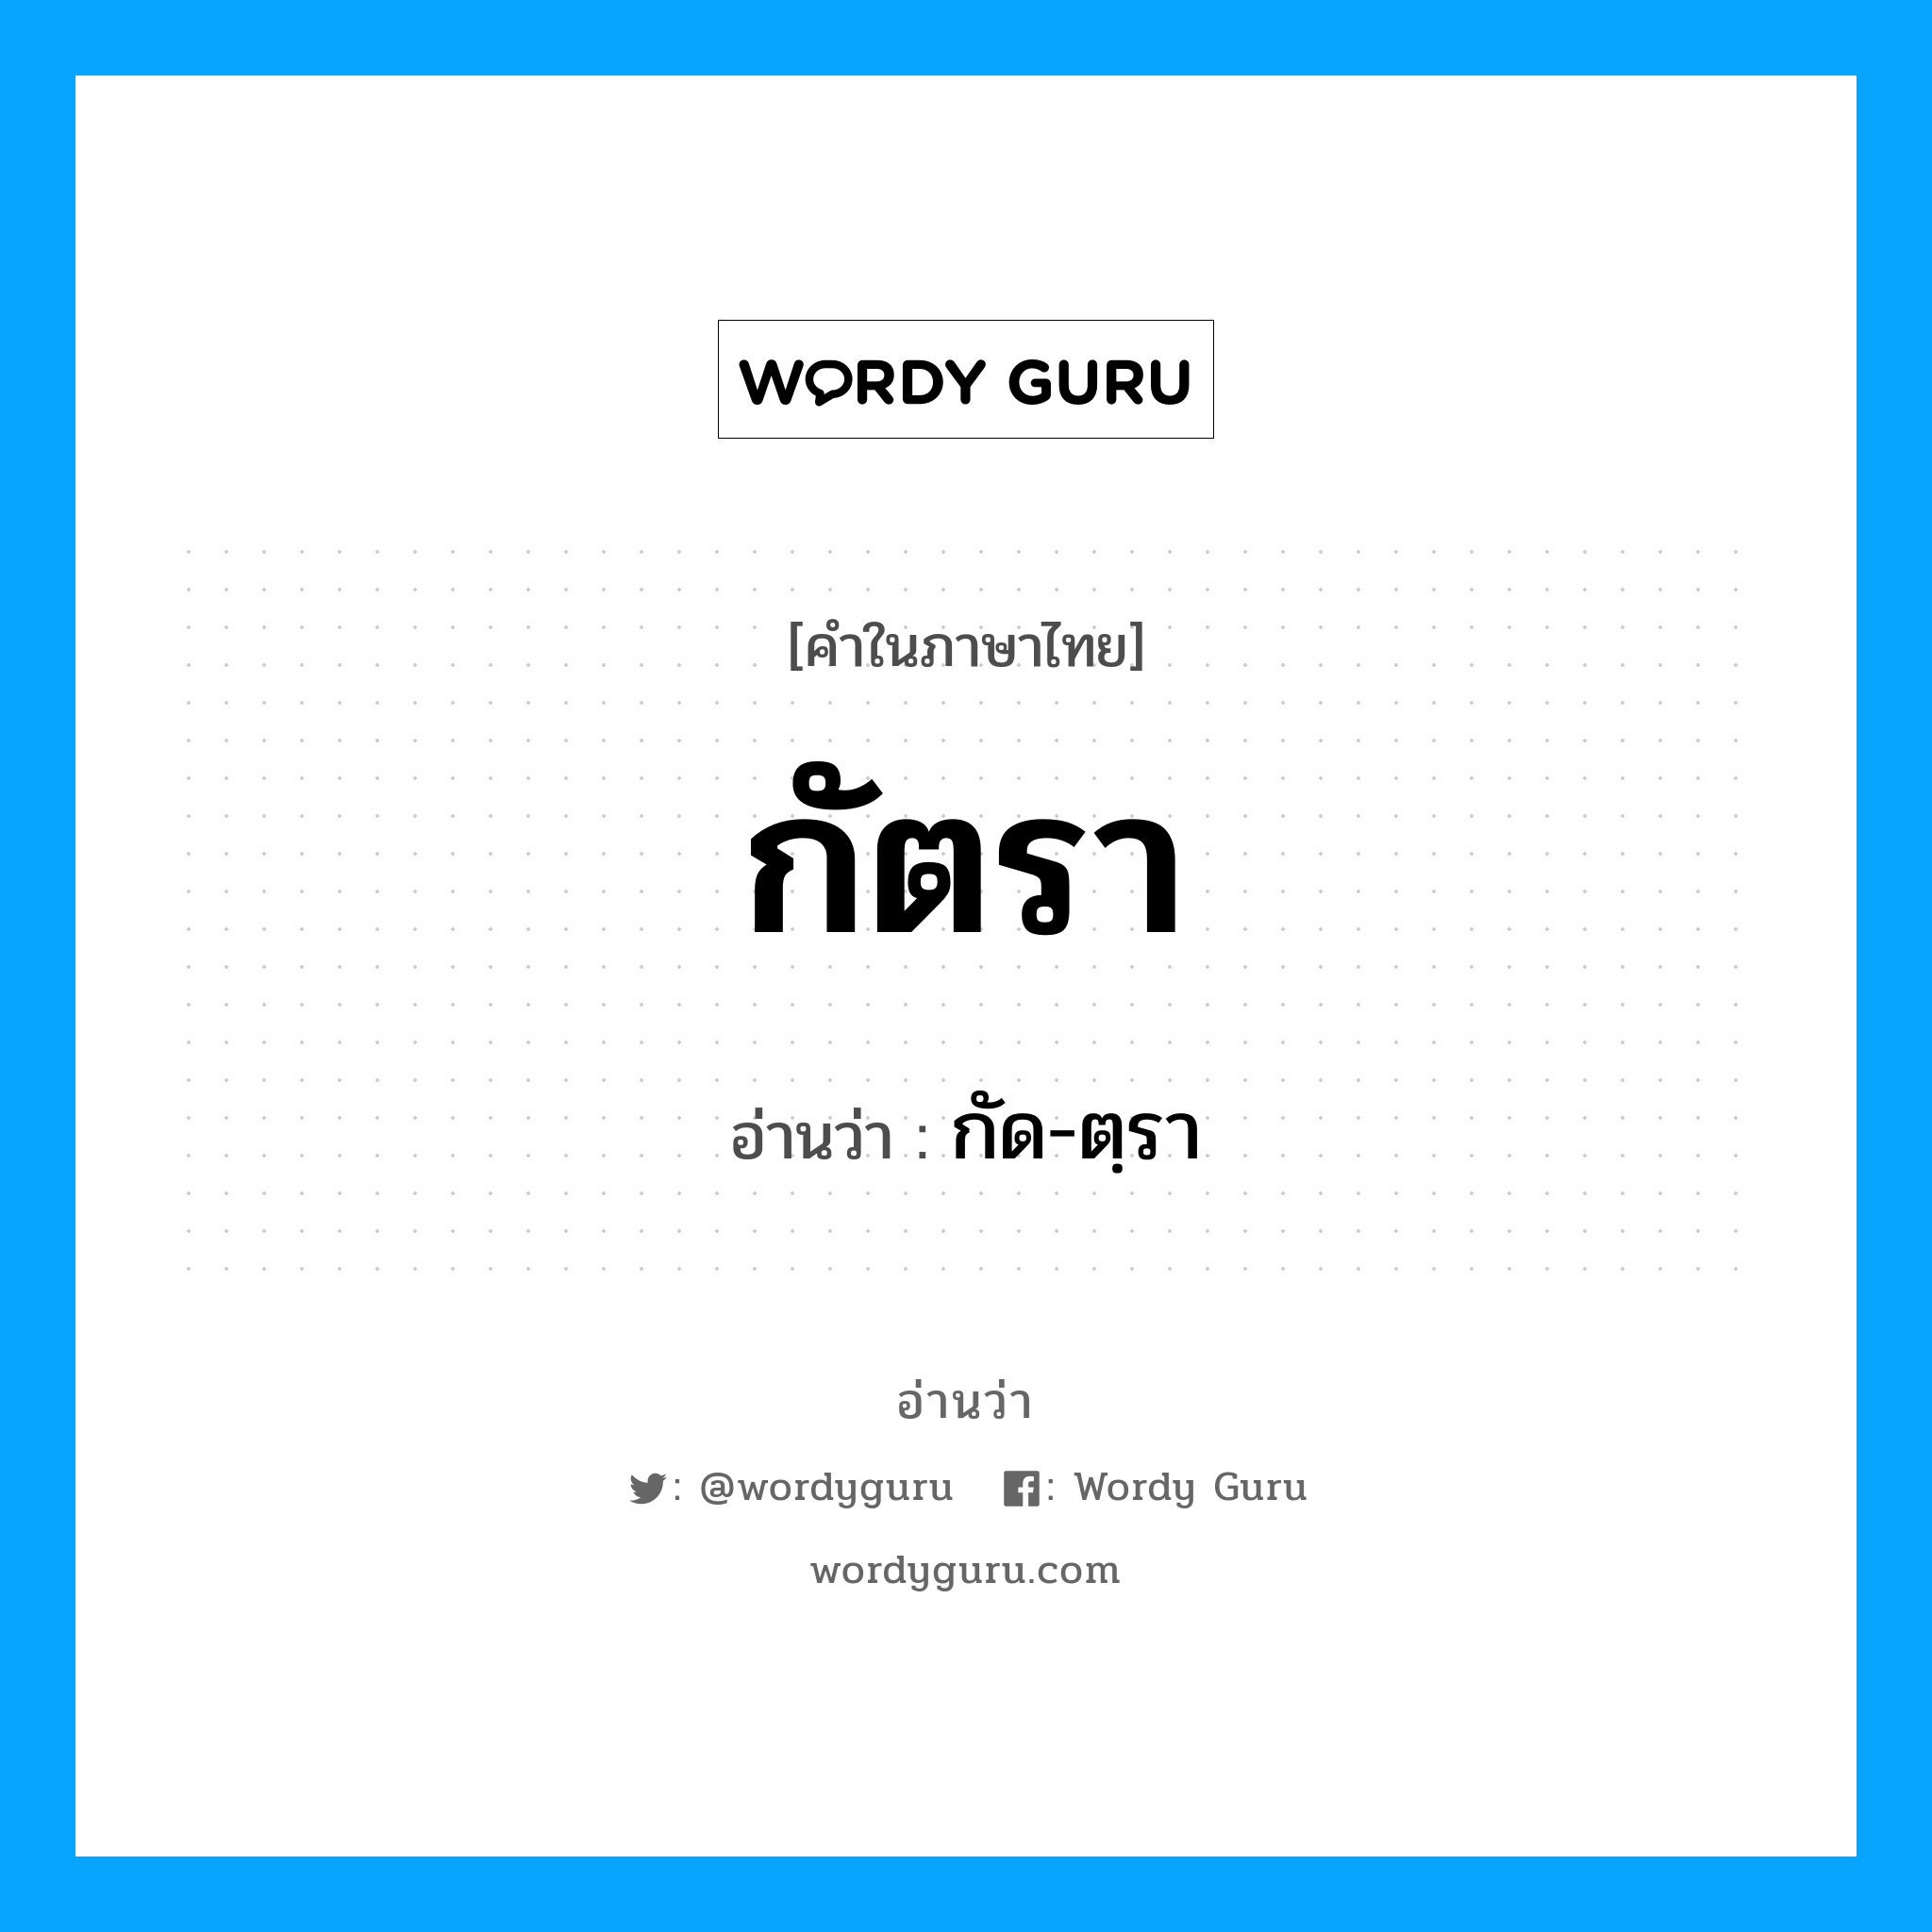 กัด-ตฺรา เป็นคำอ่านของคำไหน?, คำในภาษาไทย กัด-ตฺรา อ่านว่า กัตรา